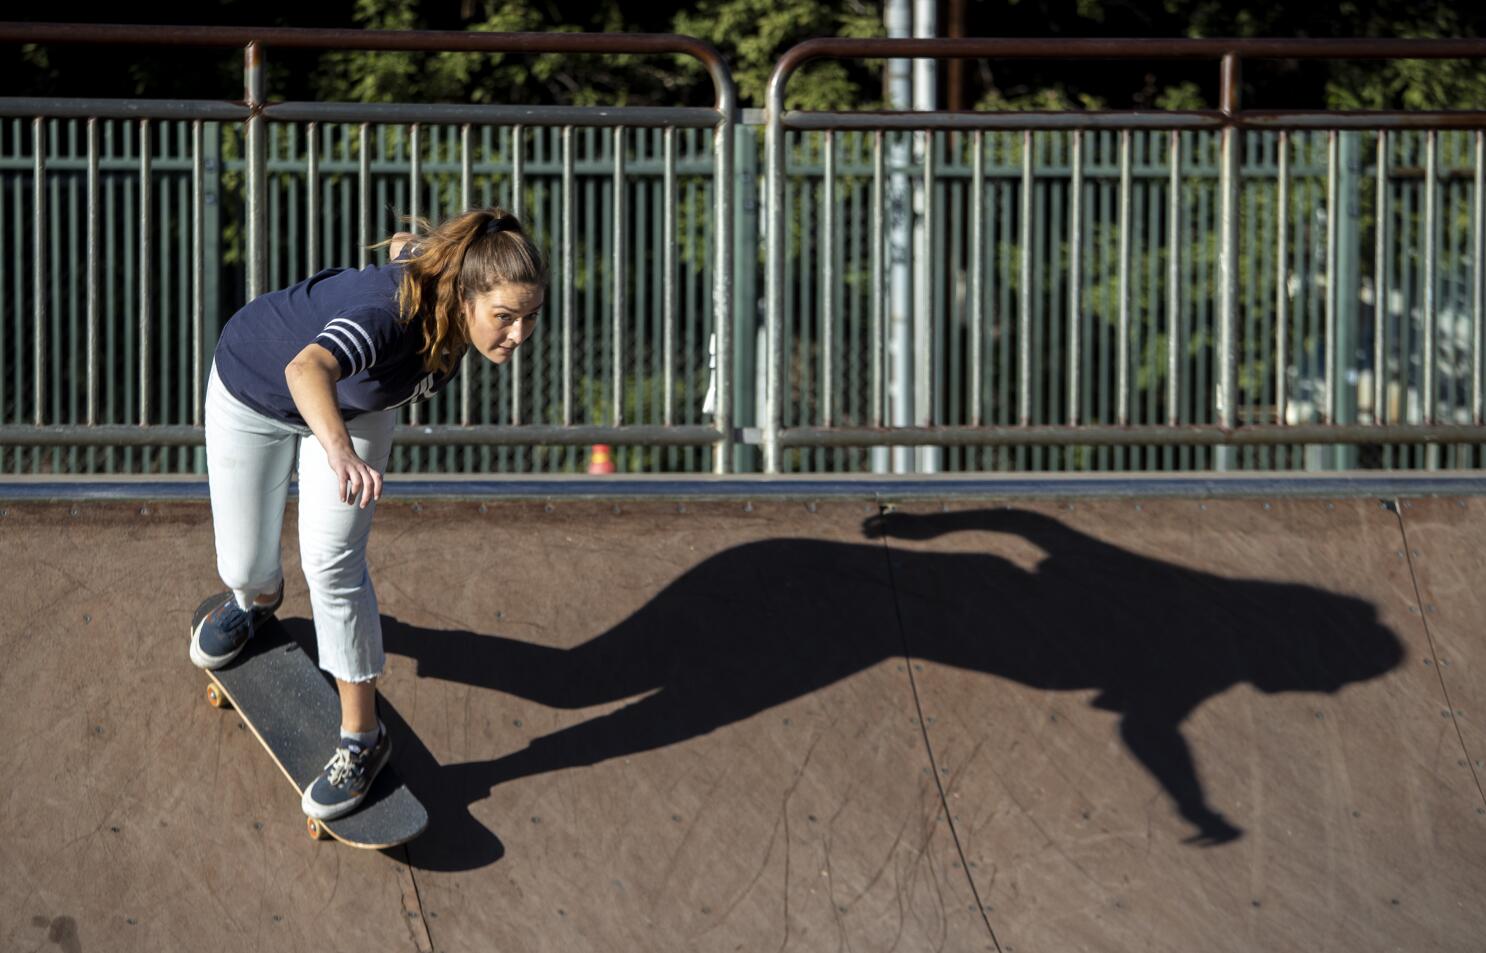 Deporte Multifuncional Skate Park y Zonas de Esparcimiento para Todos